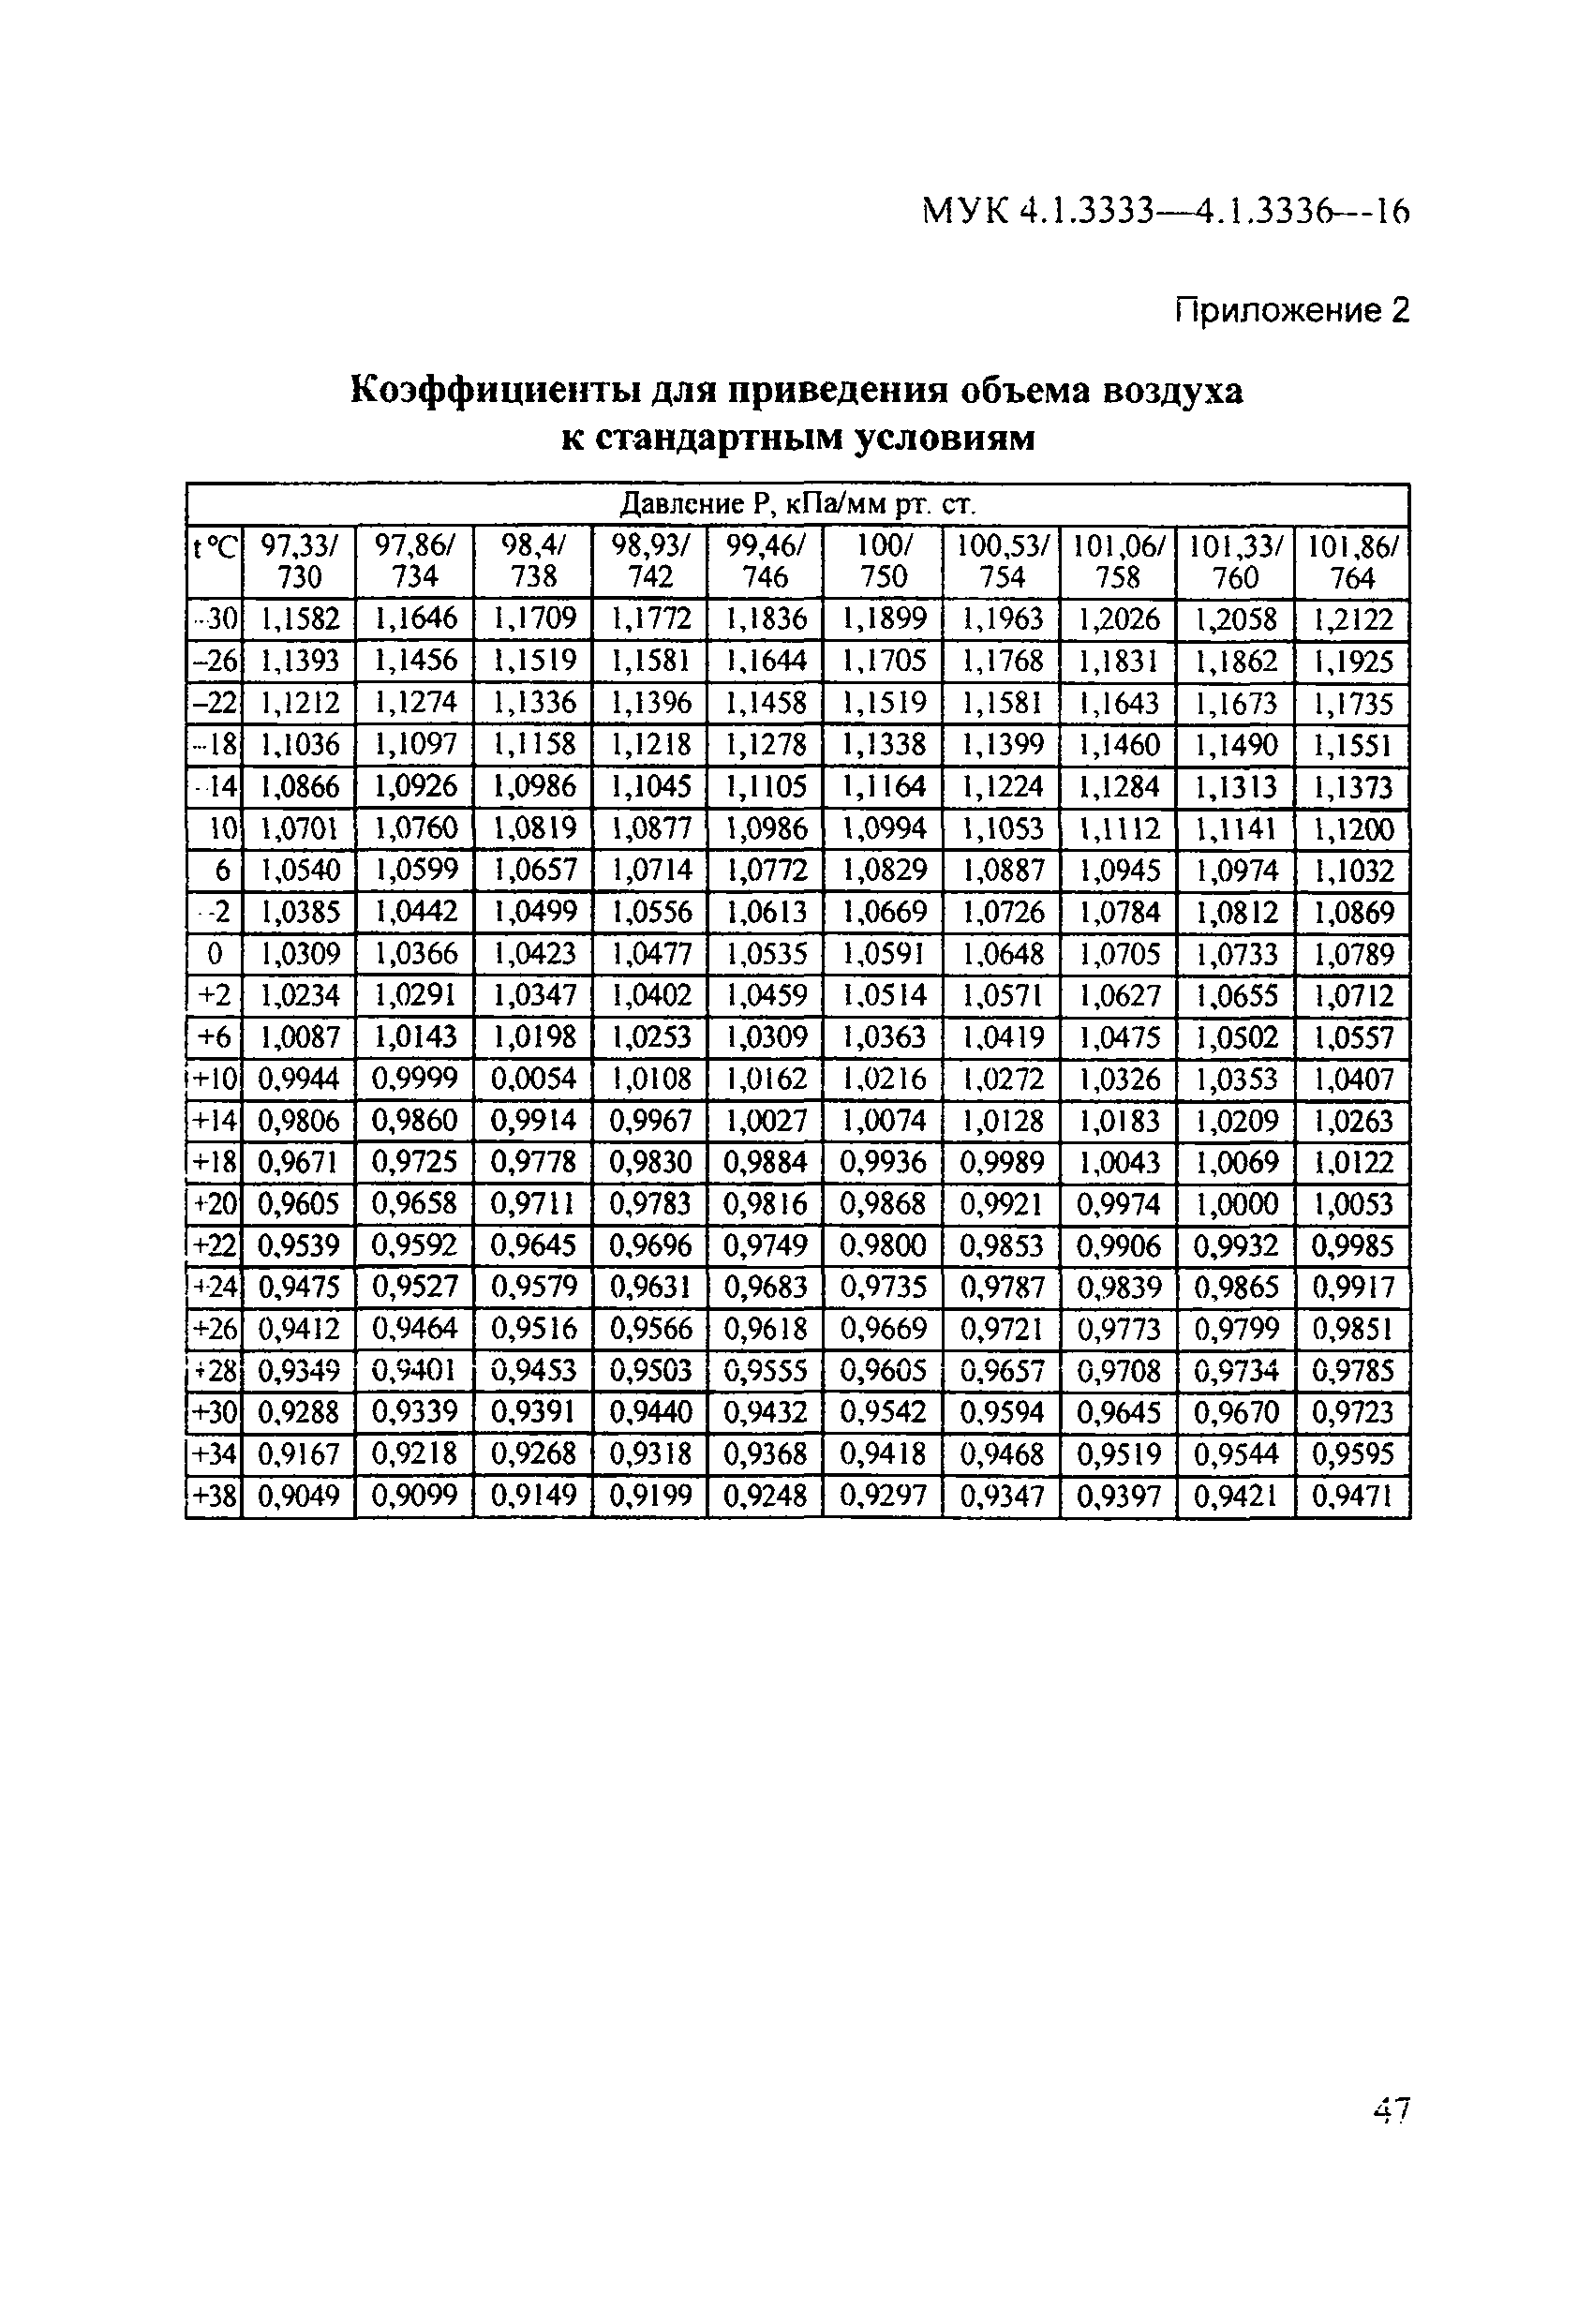 МУК 4.1.3335-16